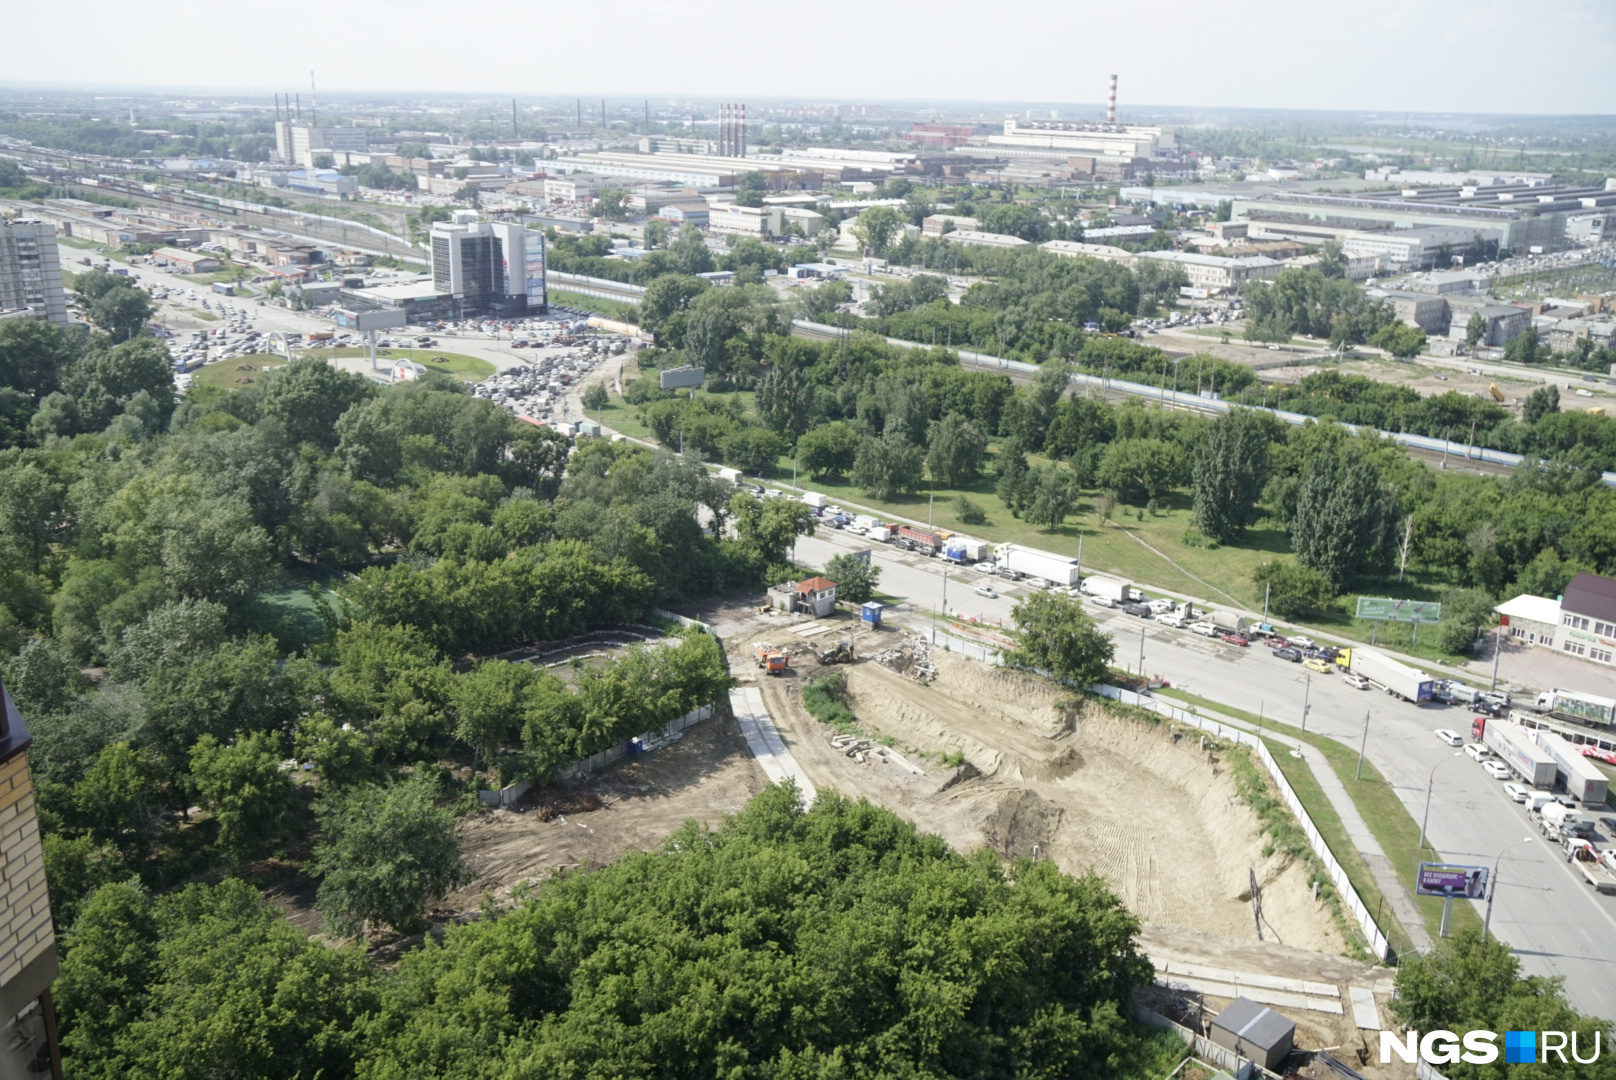 Новостройка займёт угол площади Райсовета, примыкающий к парку и площадке, зарезервированной для строительства поликлиники